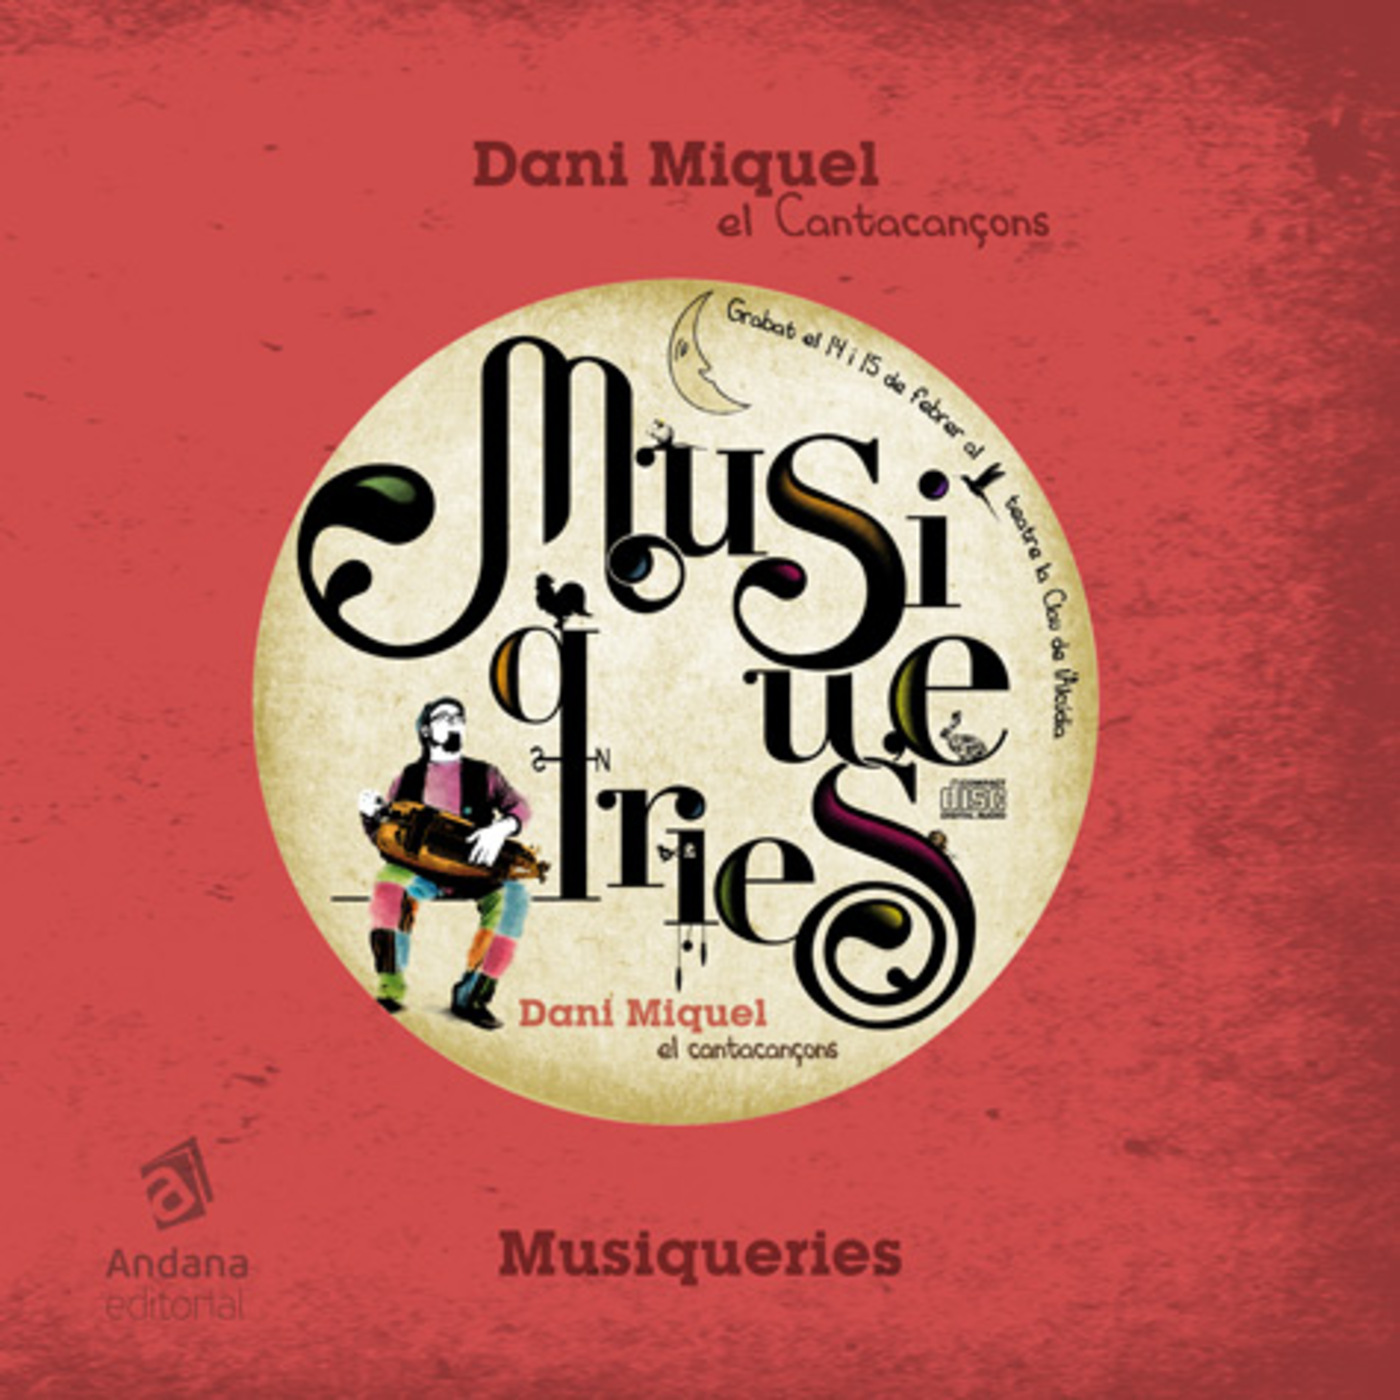 Dani Miquel  - Musiqueries  | musica en valencià